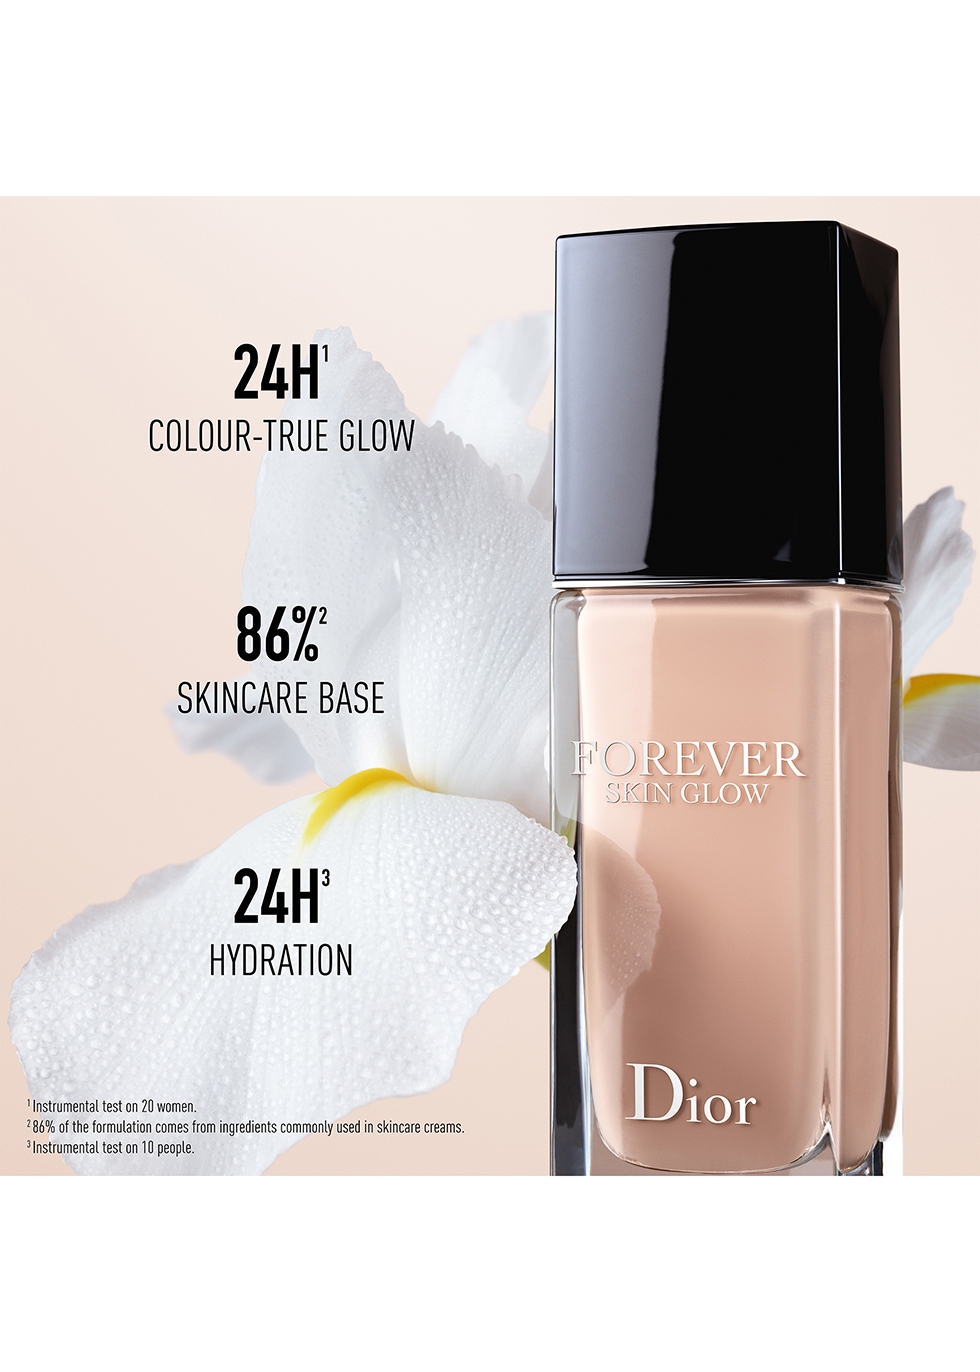 Dior Forever Skin Glow Foundation Review  Niara Alexis  YouTube